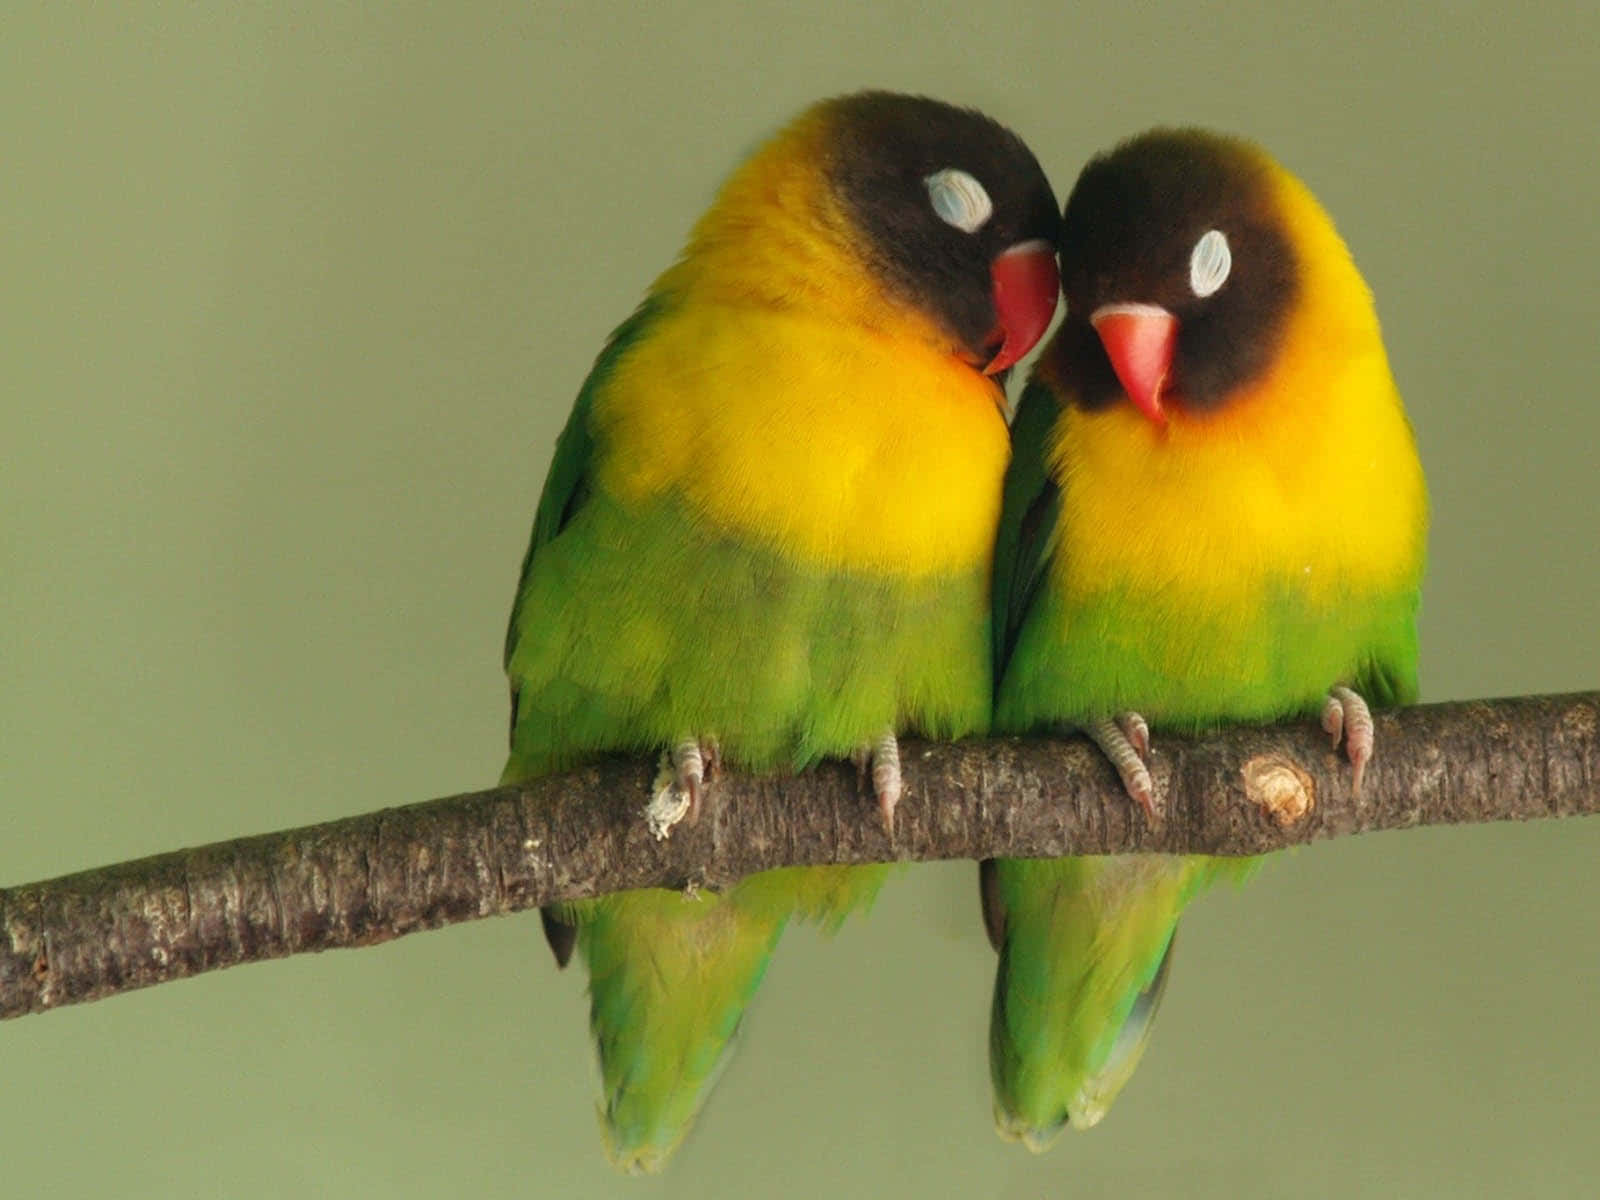 "Two Love Birds, Twinning in Love”